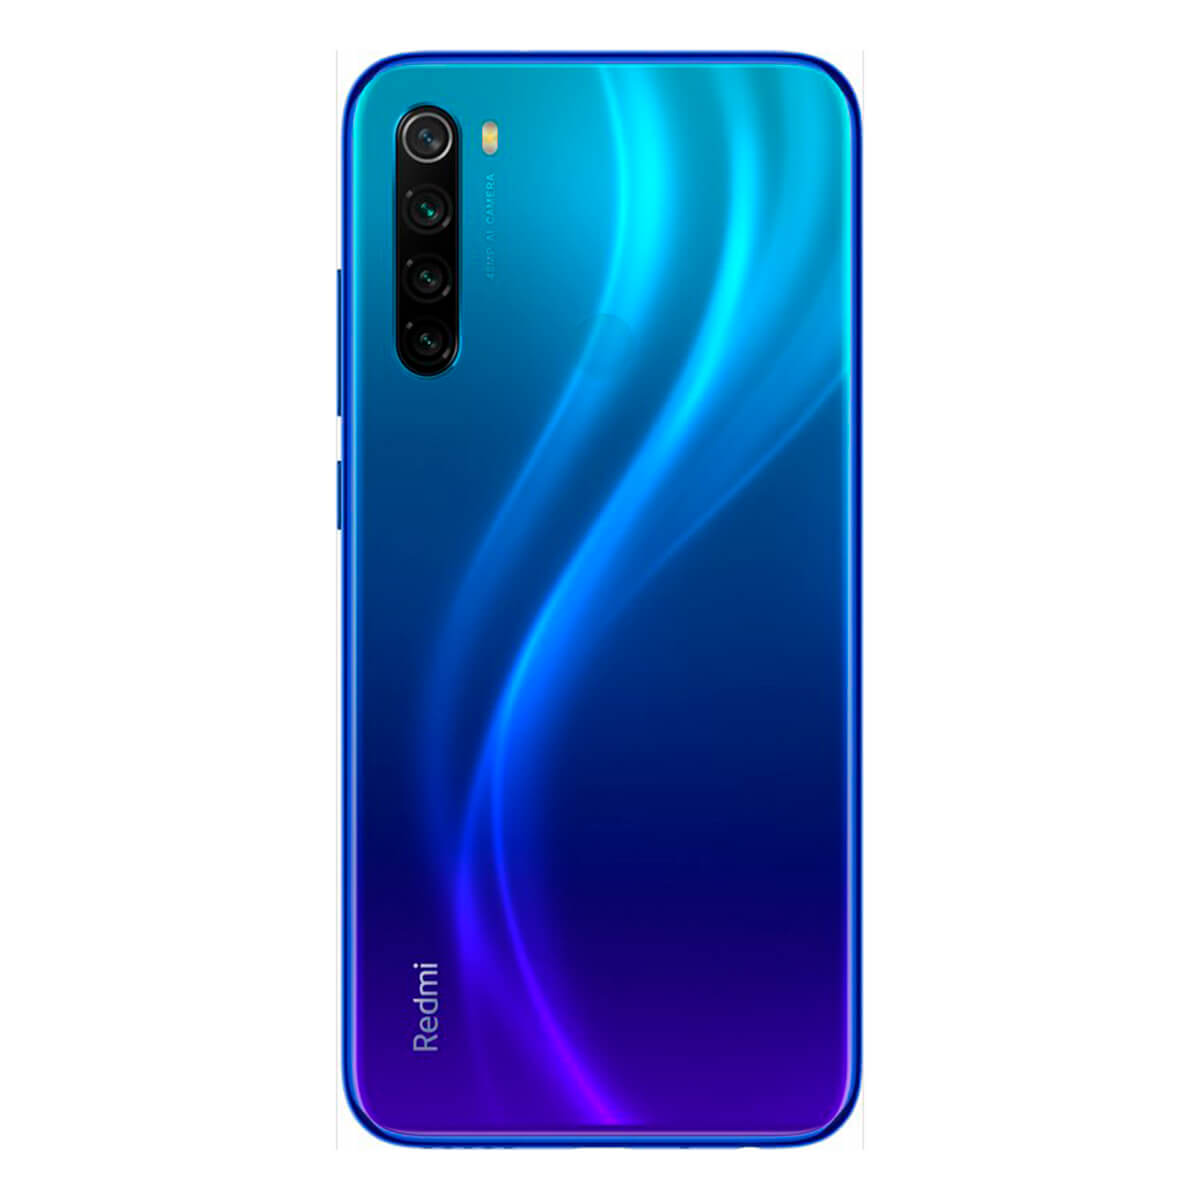 XIAOMI Note 8 GB 2021 Dual SIM Blau 64